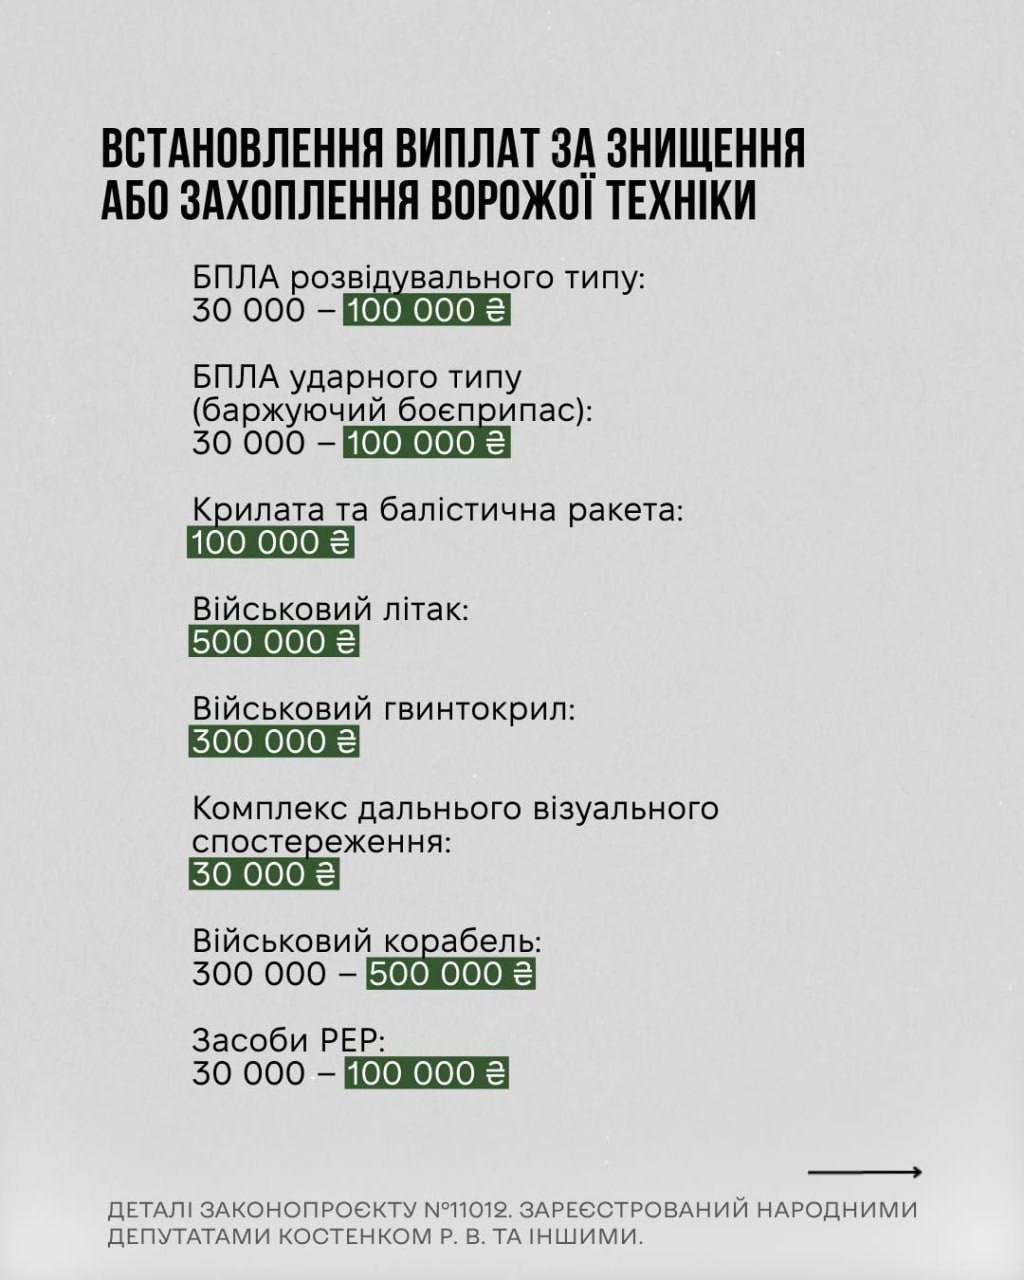 Снимок законопроекта на rada.gov.ua (с.2)